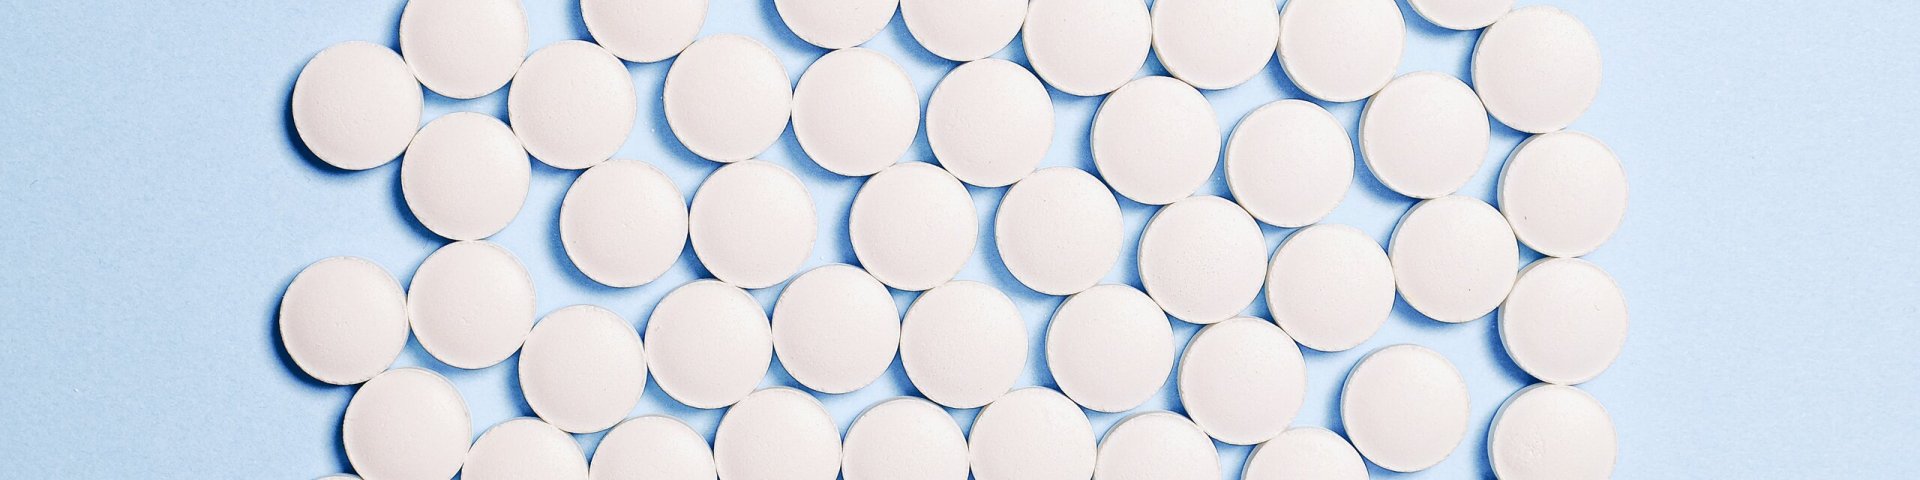 Pilt antibiootikumidest_allikas Pexels